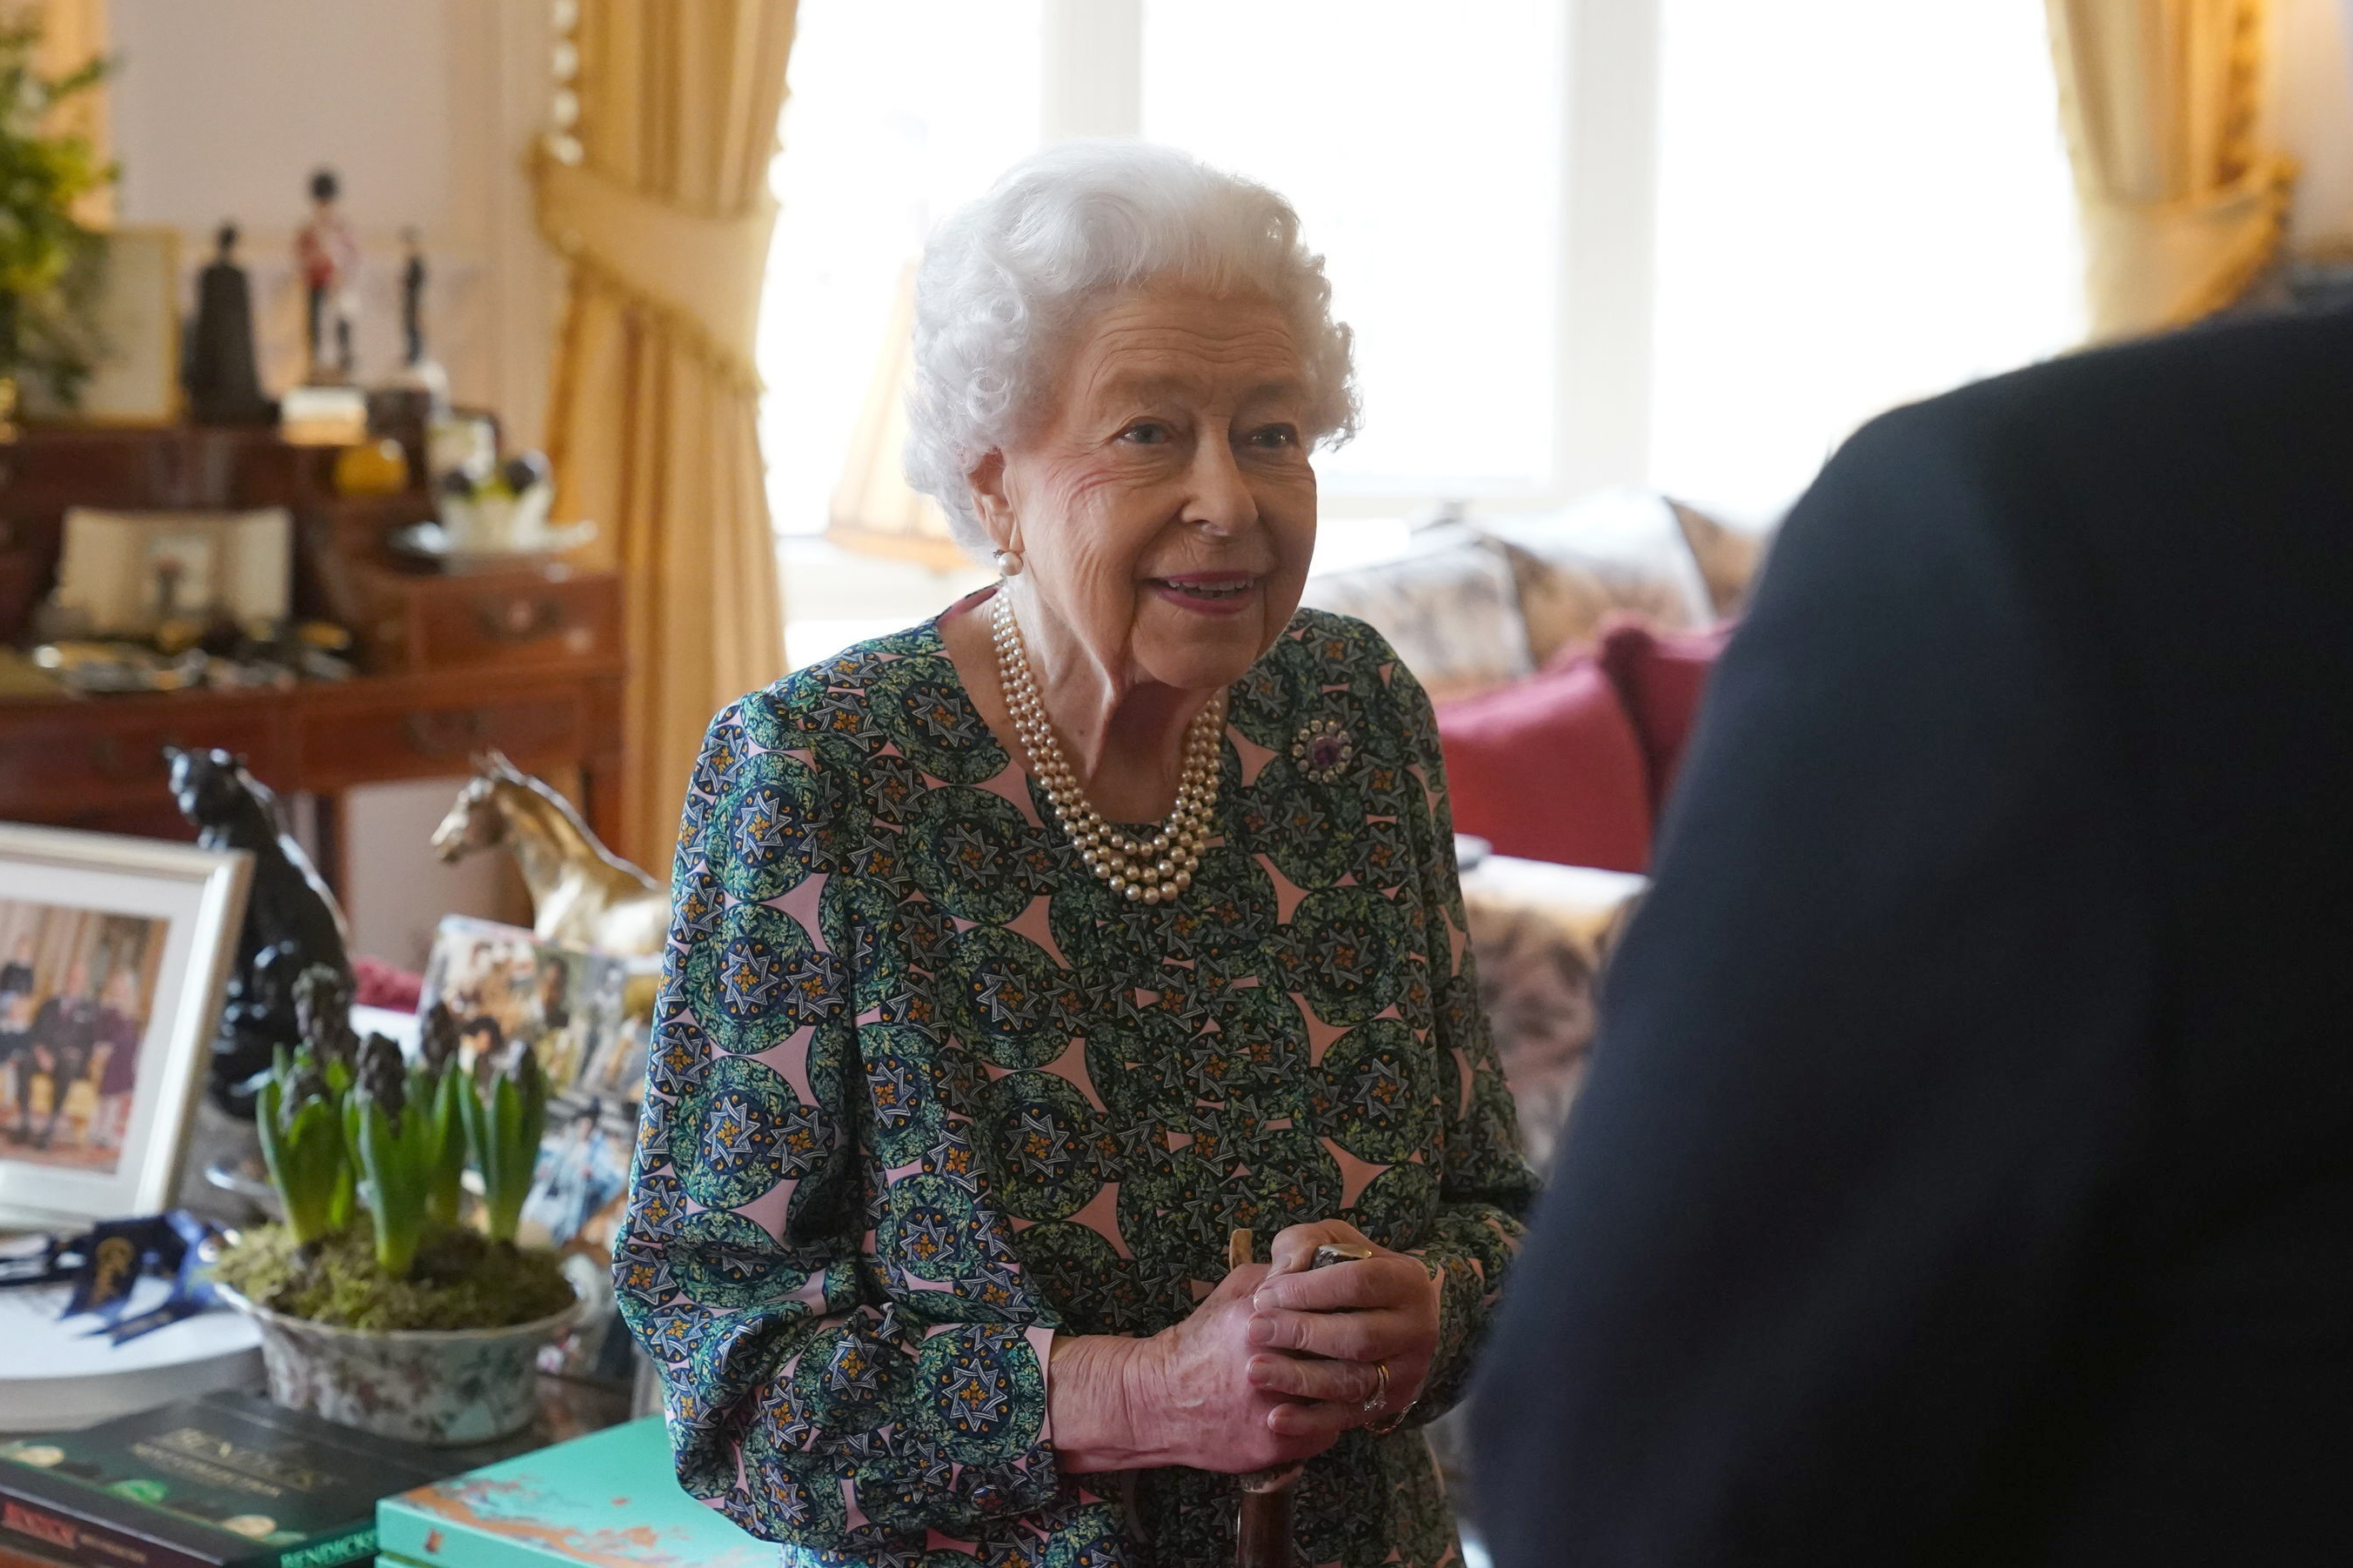 La Reina Isabel II habla durante una audiencia en el Castillo de Windsor donde se reunió con los Secretarios del Servicio de Defensa entrantes y salientes, el miércoles 16 de febrero de 2022. El Palacio de Buckingham dijo el domingo 20 de febrero de 2022 que la Reina Isabel II dio positivo en la prueba de COVID-19, tiene síntomas leves y continuará con sus funciones.